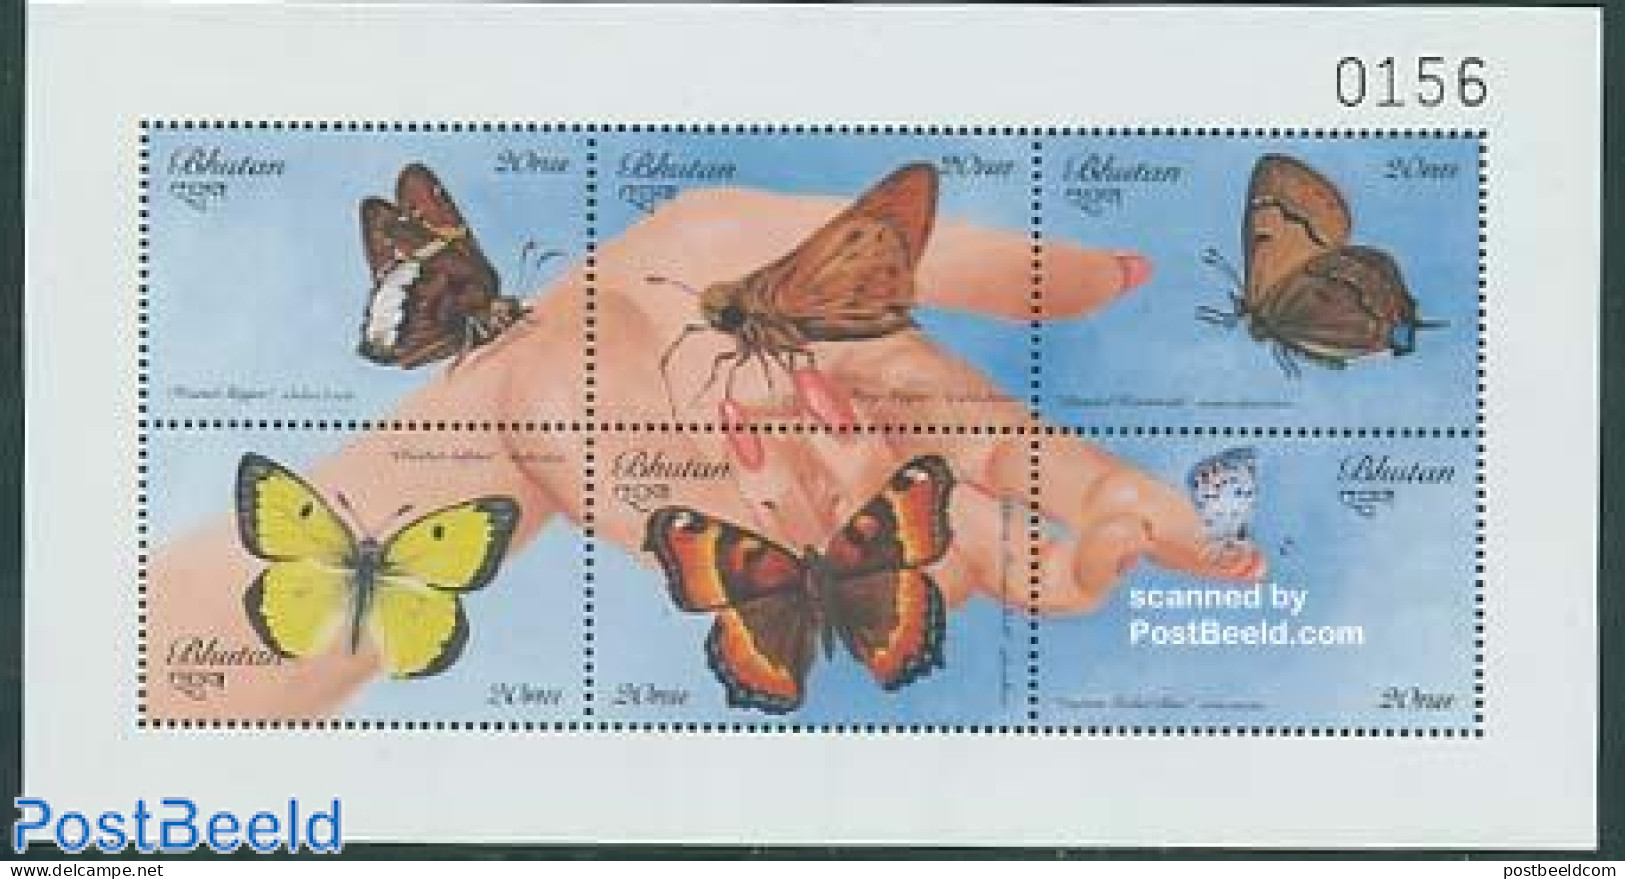 Bhutan 1999 Butterflies 6v M/s, Mint NH, Nature - Butterflies - Bhutan